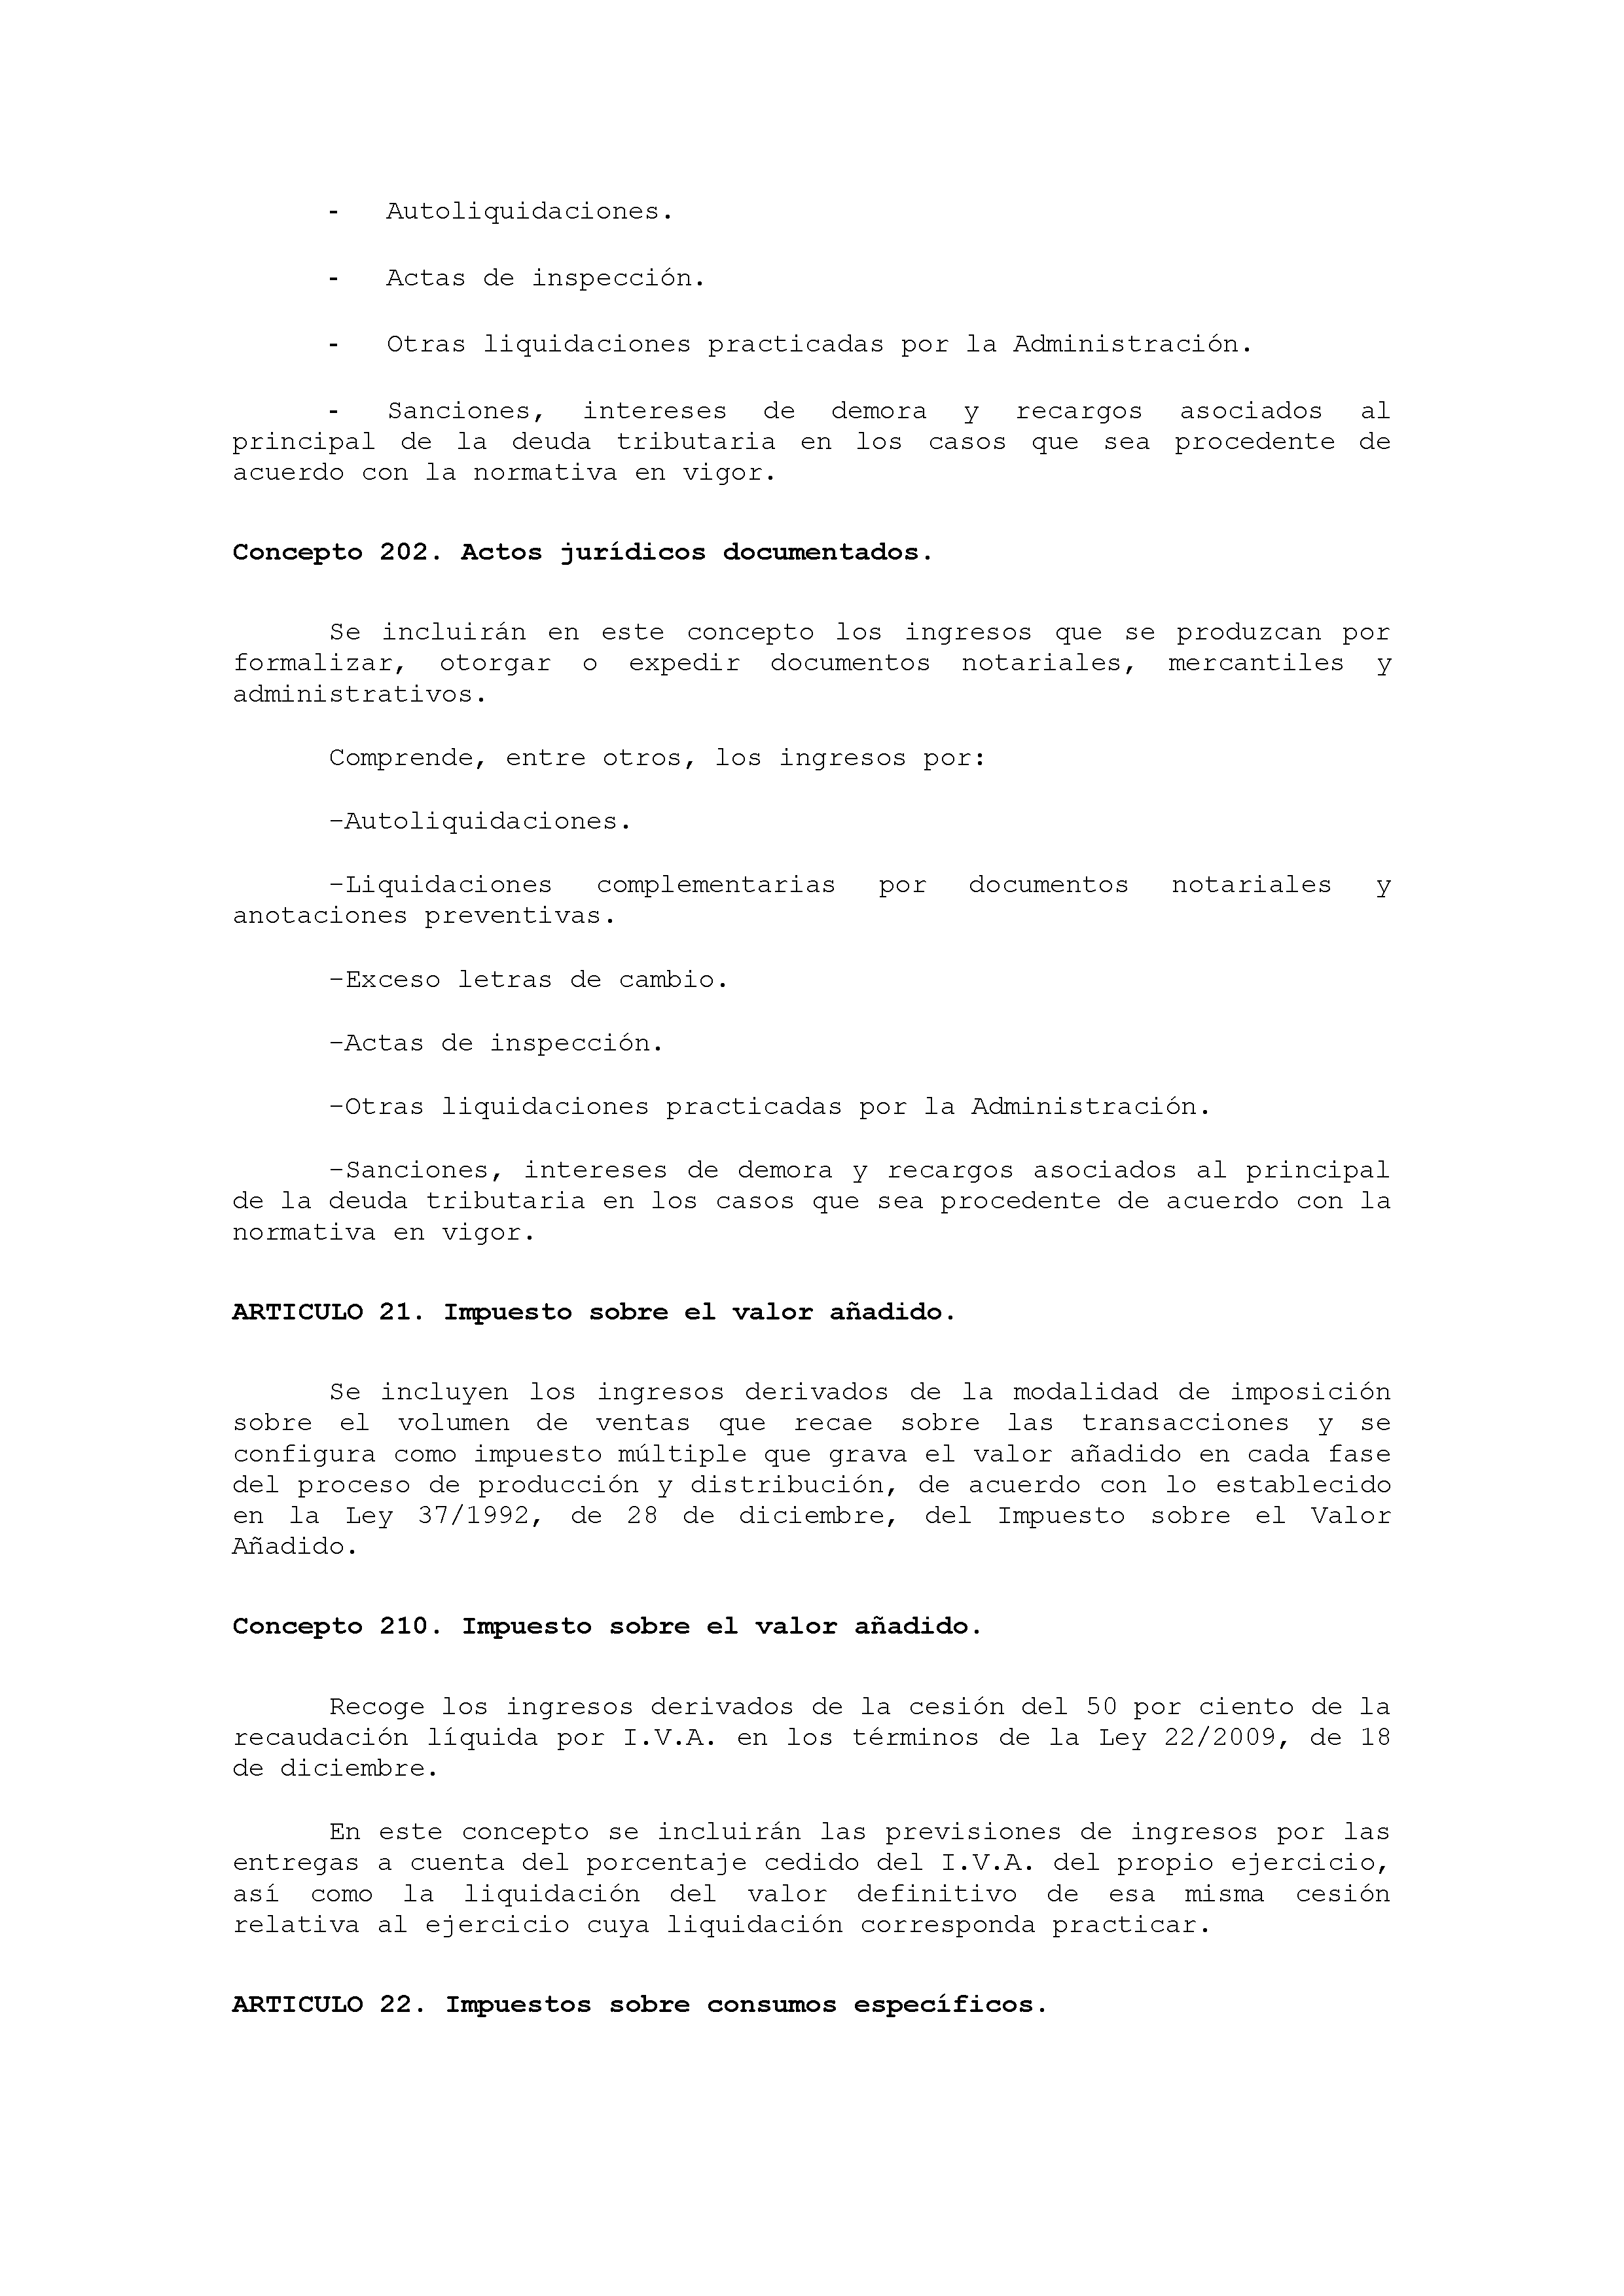 ANEXO VIII CÓDIGO DE LA CLASIFICACIÓN ECONÓMICA DE LOS INGRESOS PÚBLICOS Pag 5